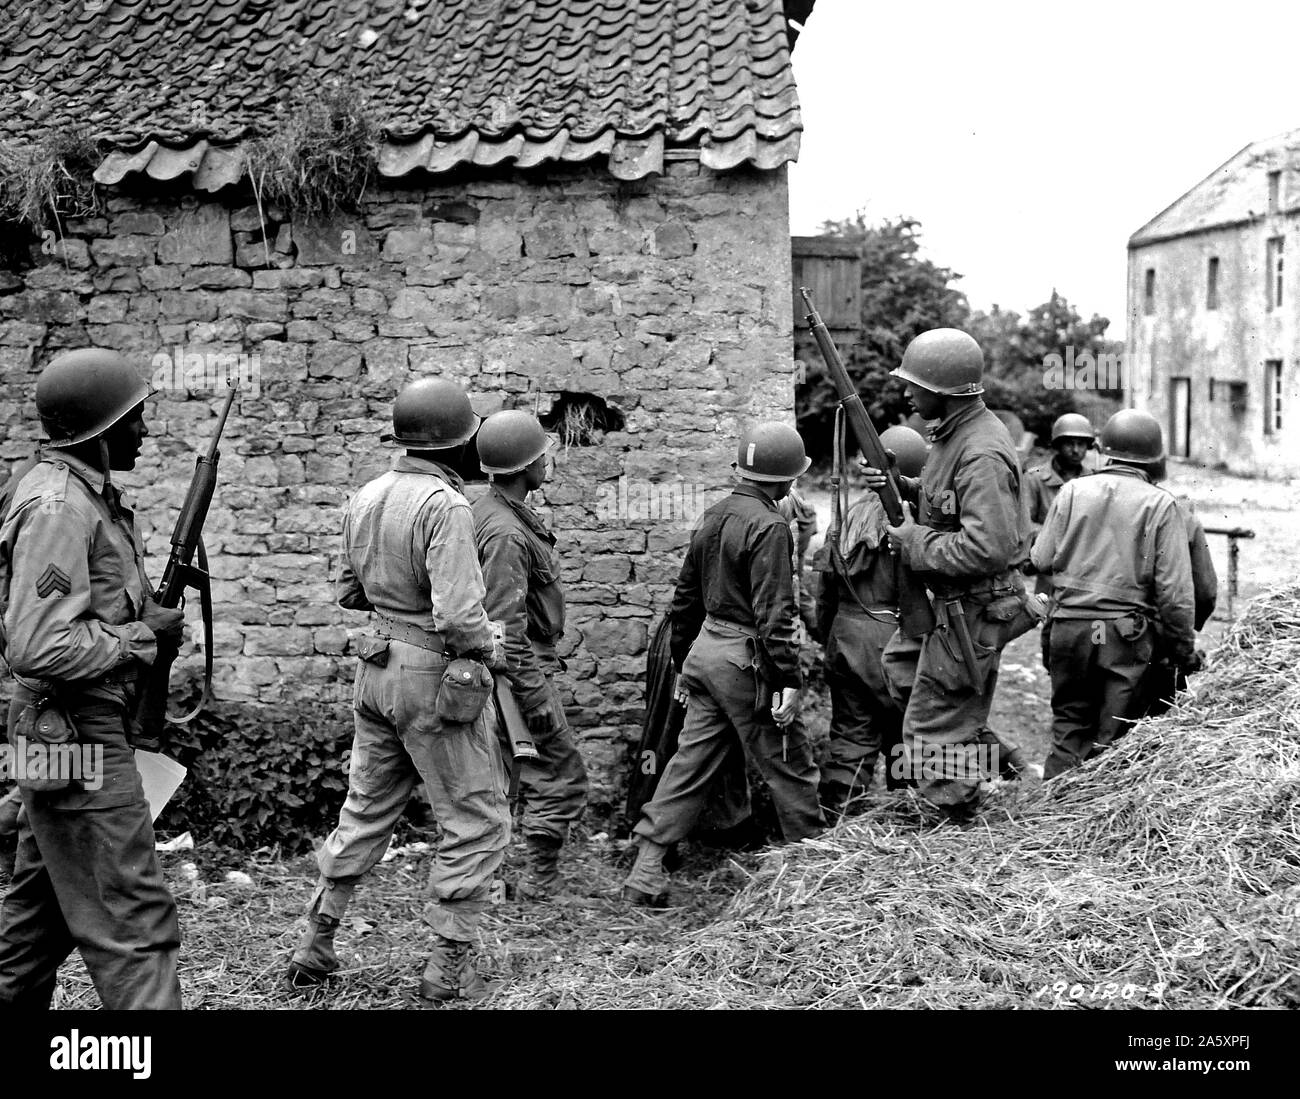 [ORIGINAL CAPTION] Invasion der Alliierten in Frankreich... Ein Trupp von Negro Truppen umgibt ein Haus in einer Stadt in Frankreich, die sich darauf vorbereiten, zu beseitigen, ein Deutscher Scharfschütze eine Vorauszahlung. 10. Juni 1944. Omaha Beachhead, in der Nähe der Vierville Sur-Mer, Frankreich Stockfoto